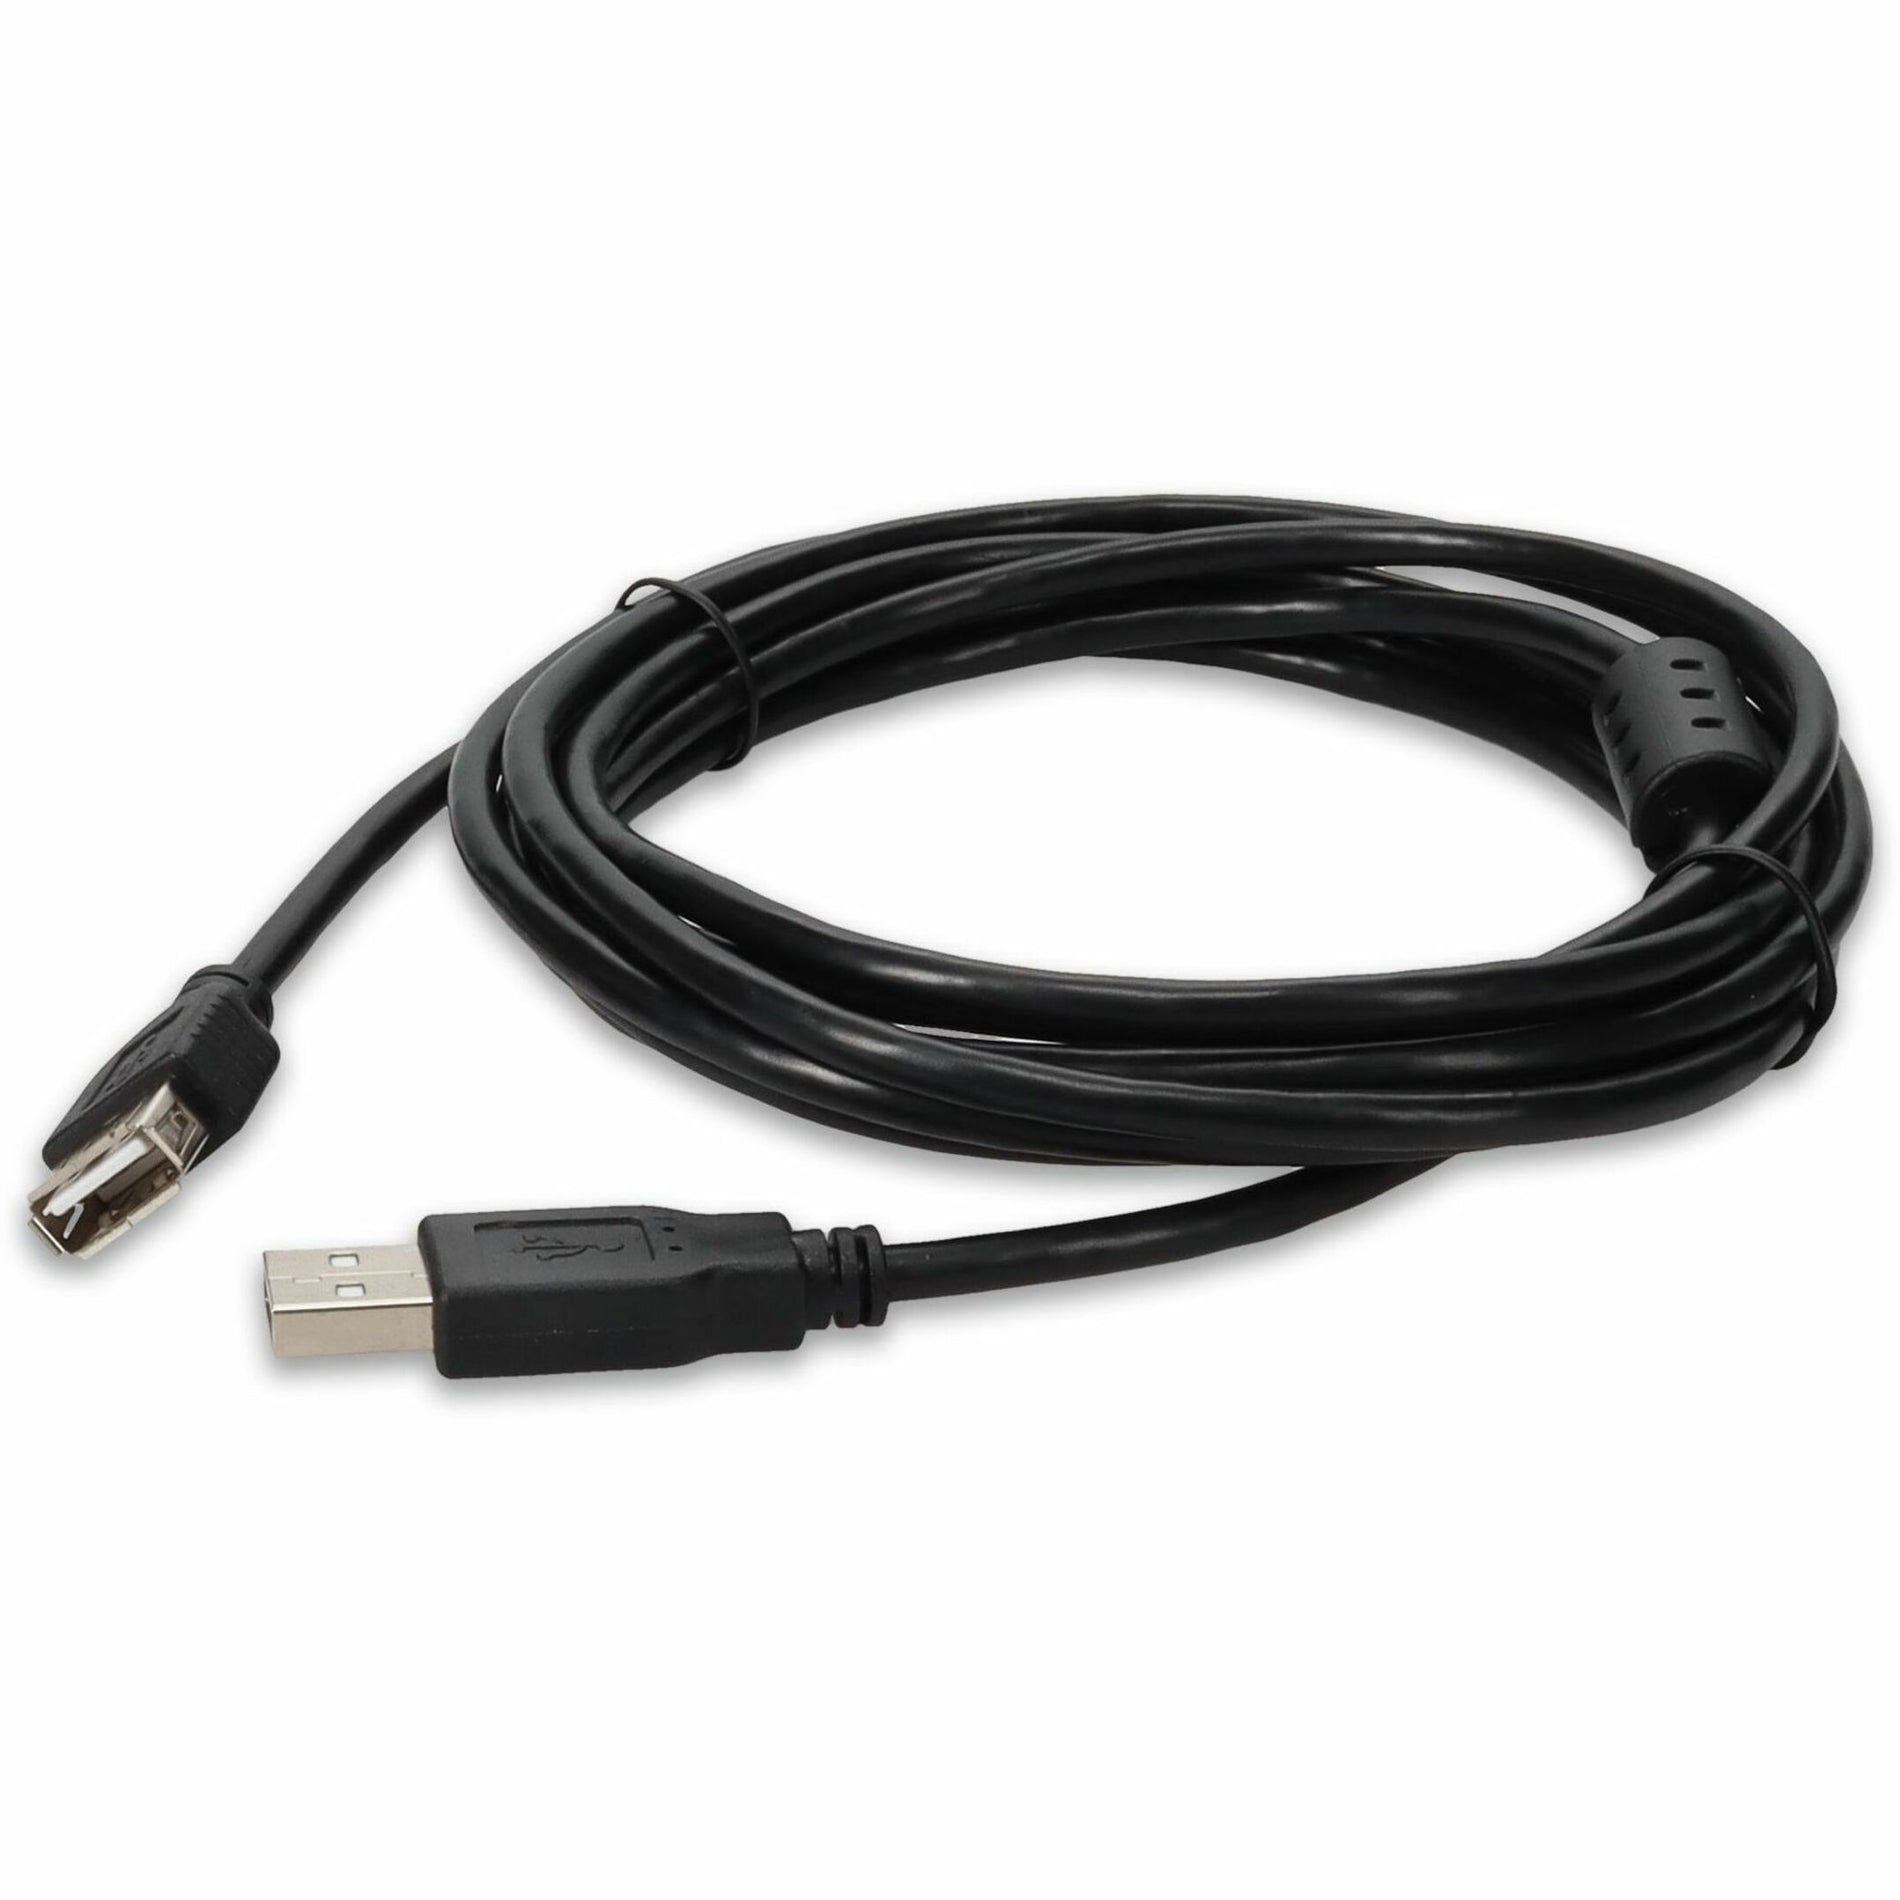 Paquete a granel de 5 unidades de Cable de extensión USB 2.0 A a A de 10 pies 3M negro de AddOn USBEXTAA10FB-5PK.